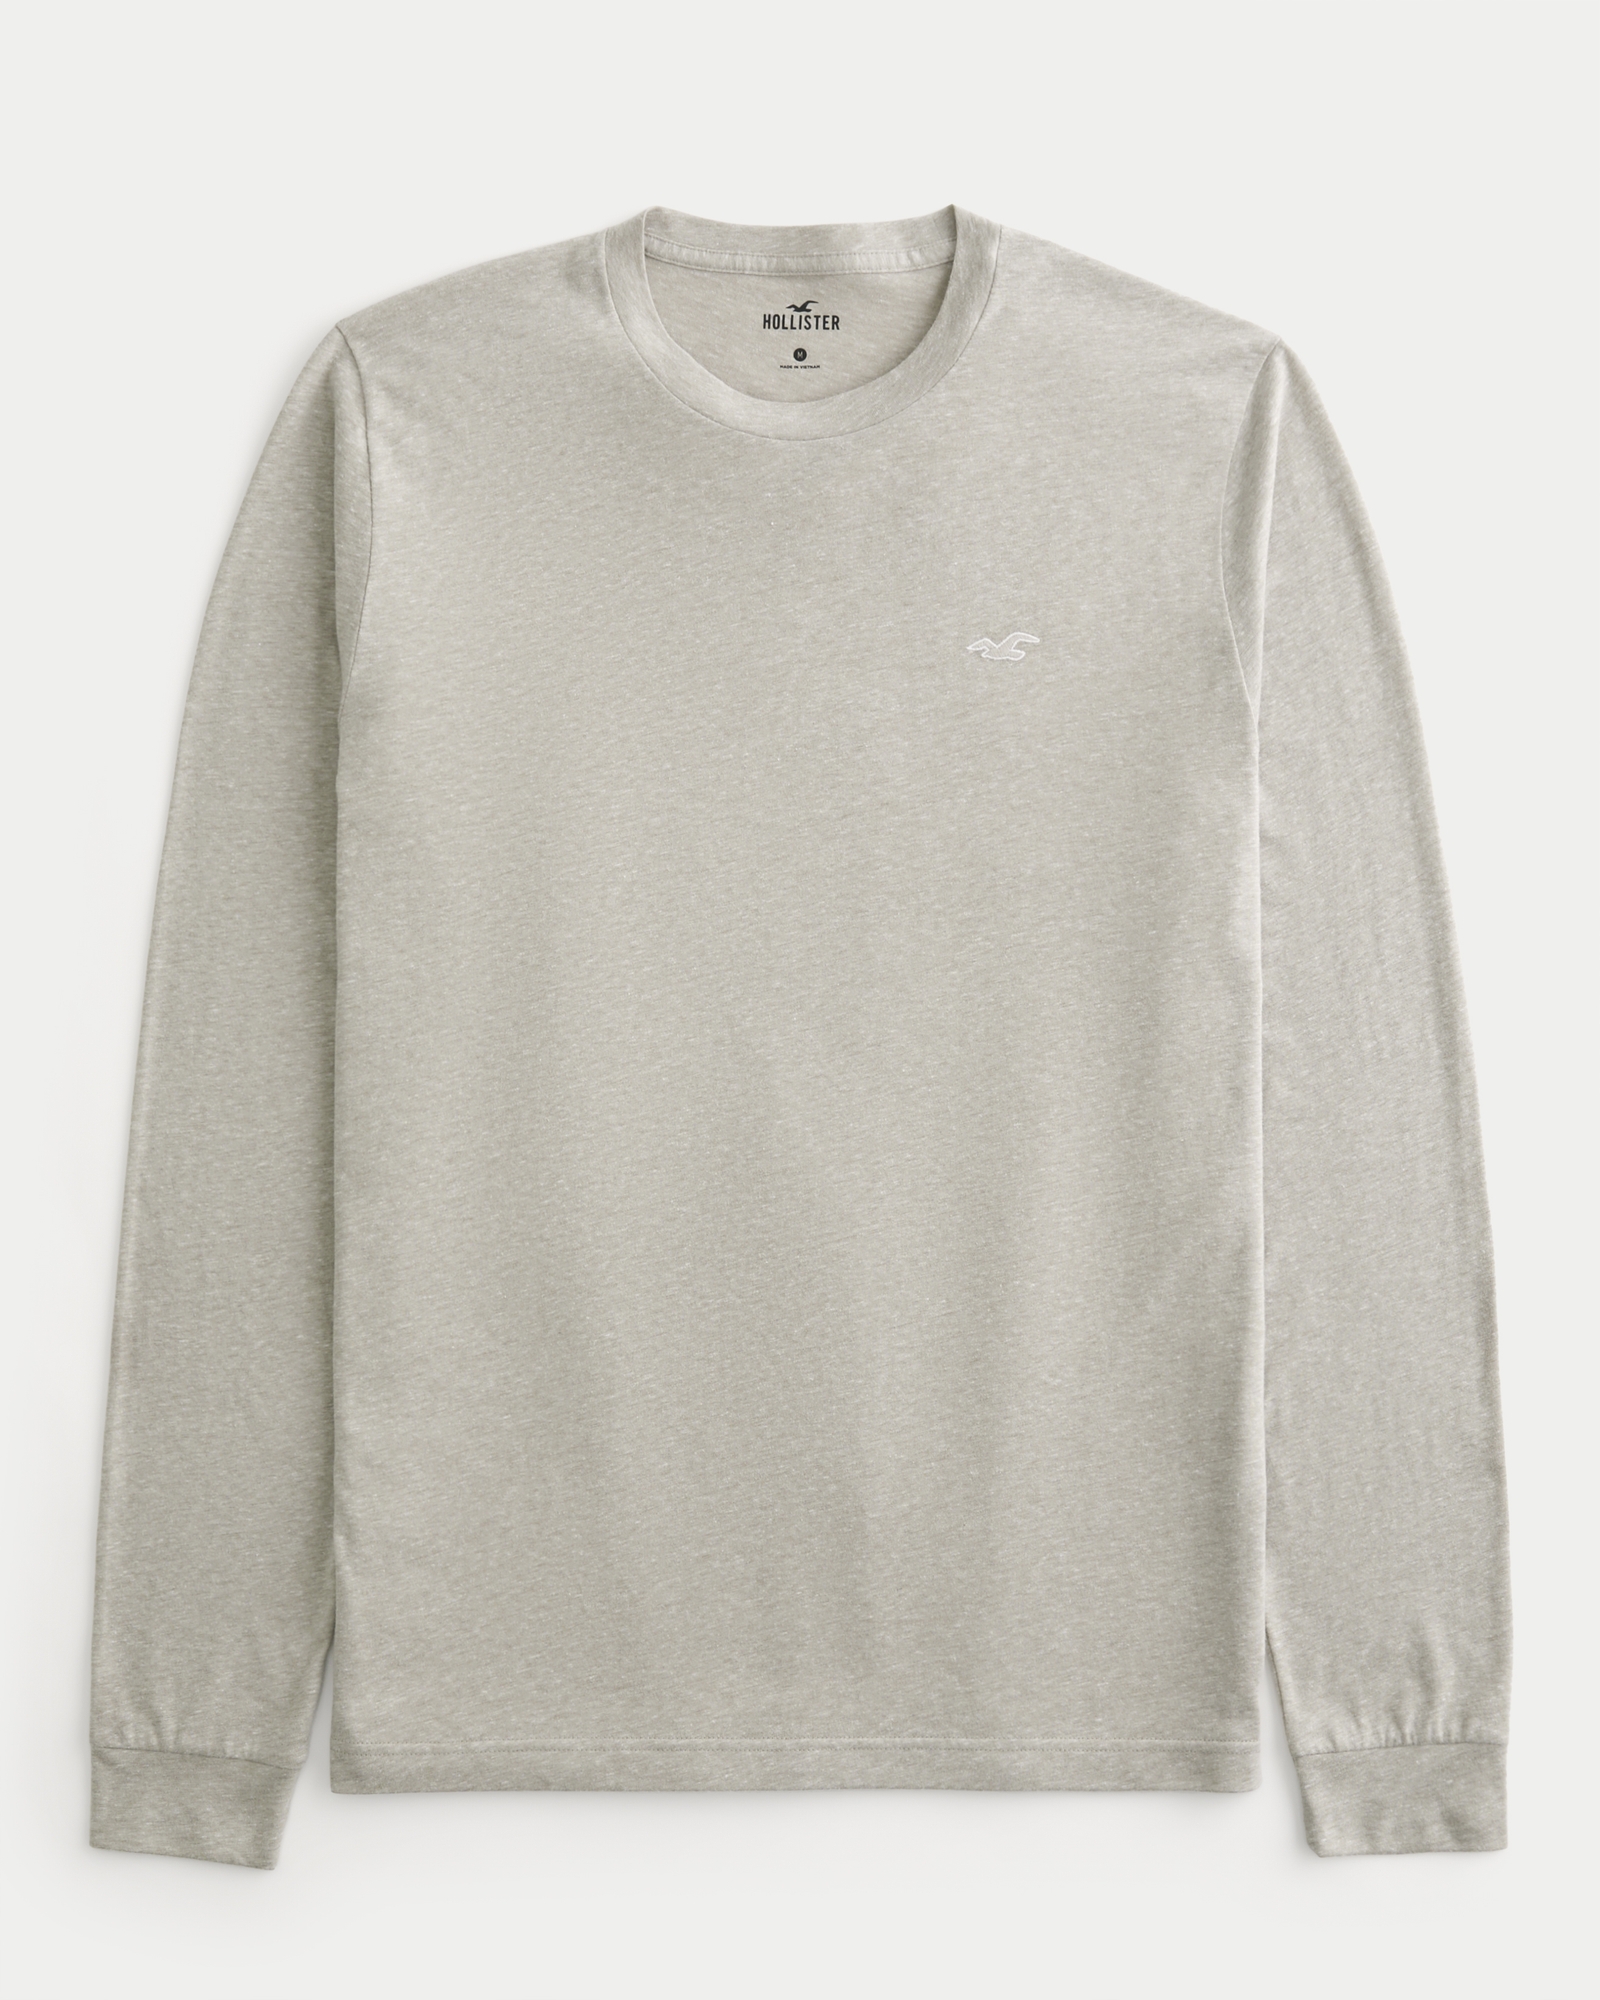 Hollister Long Sleeve Henley Shirt Gray Size XS - $12 (52% Off